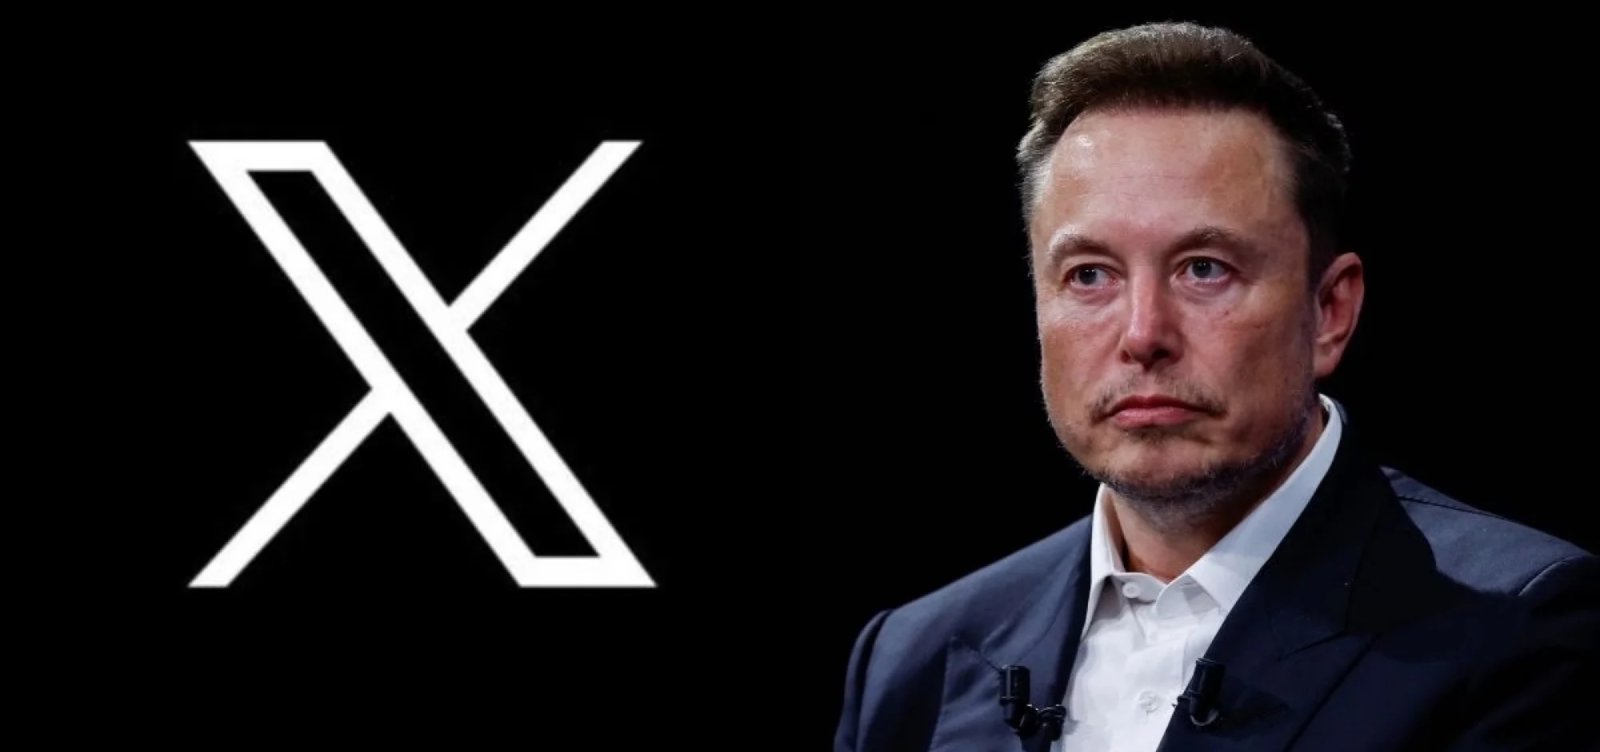 Novos usuários do X (ex-Twitter) terão que pagar para postar por três meses, diz Elon Musk